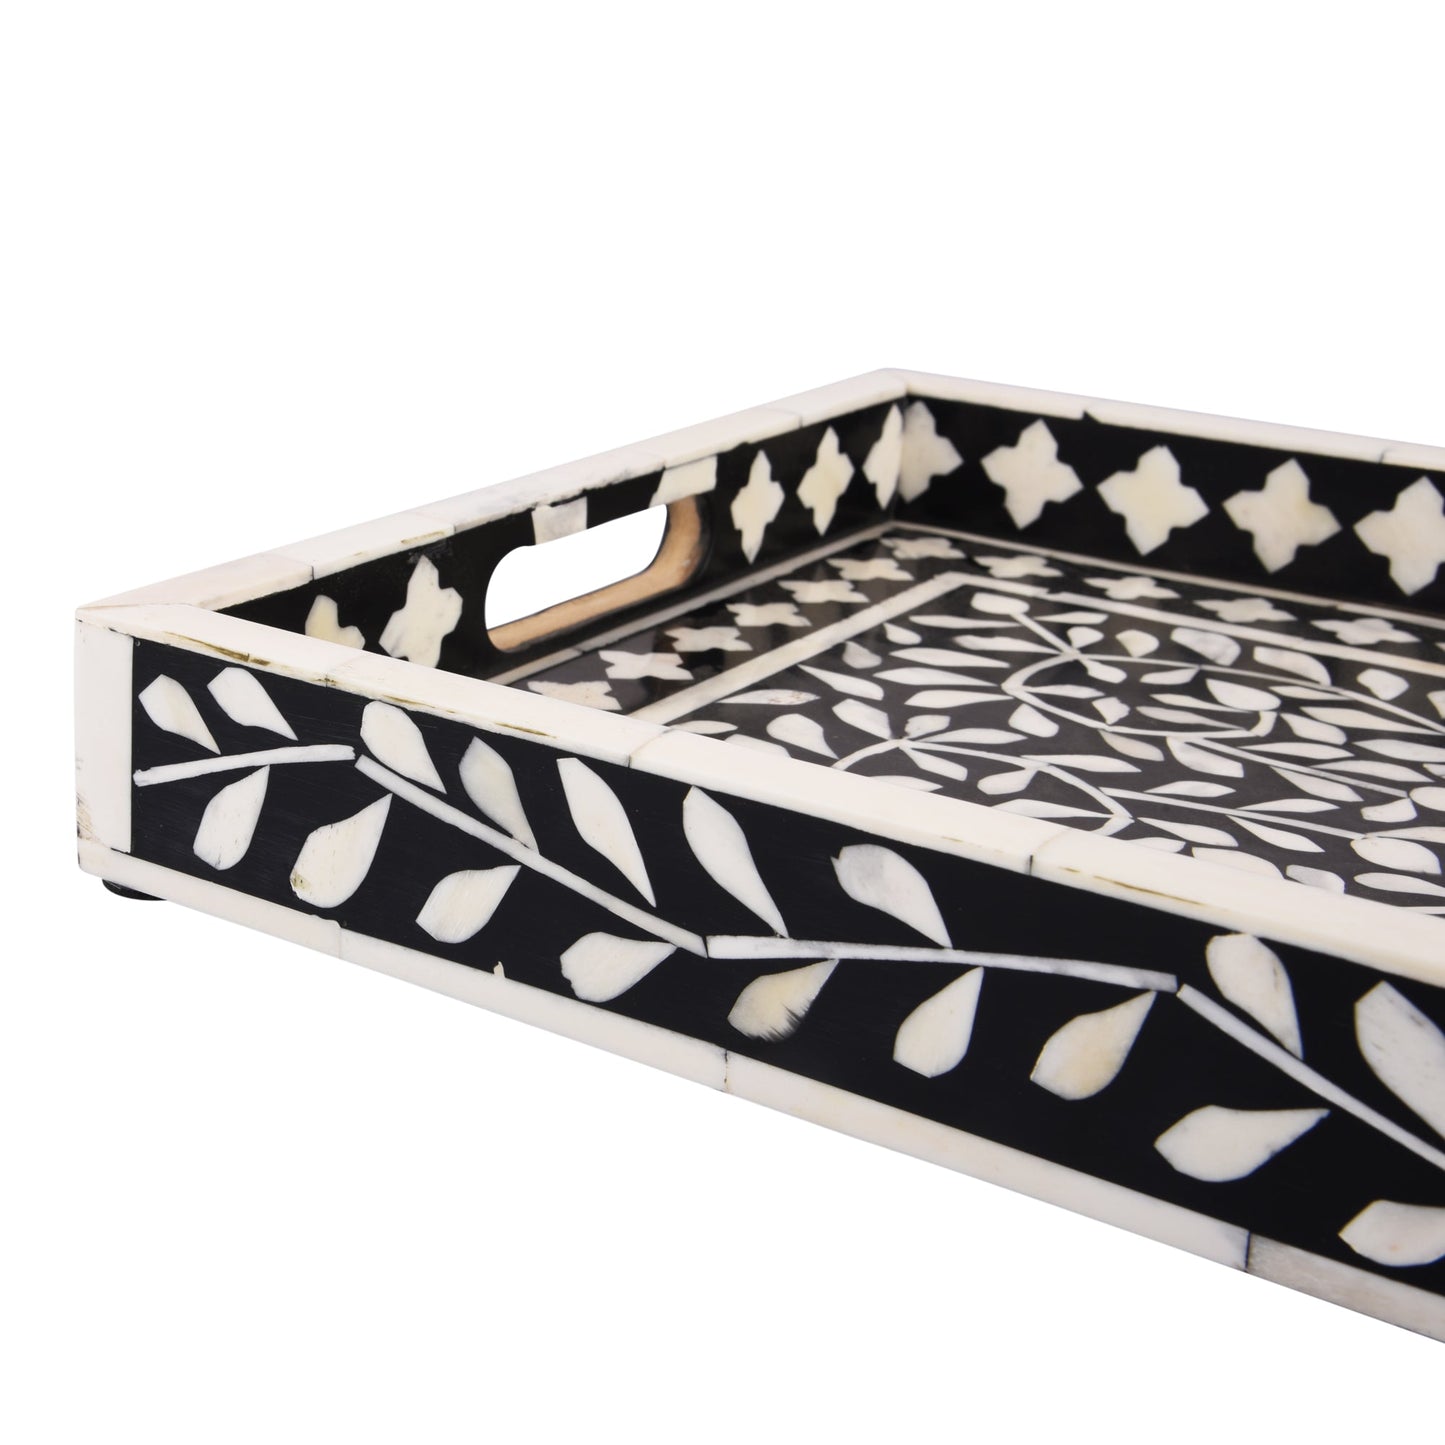 Decorative Tray Alhambra Grande Black & White 11x17 inch